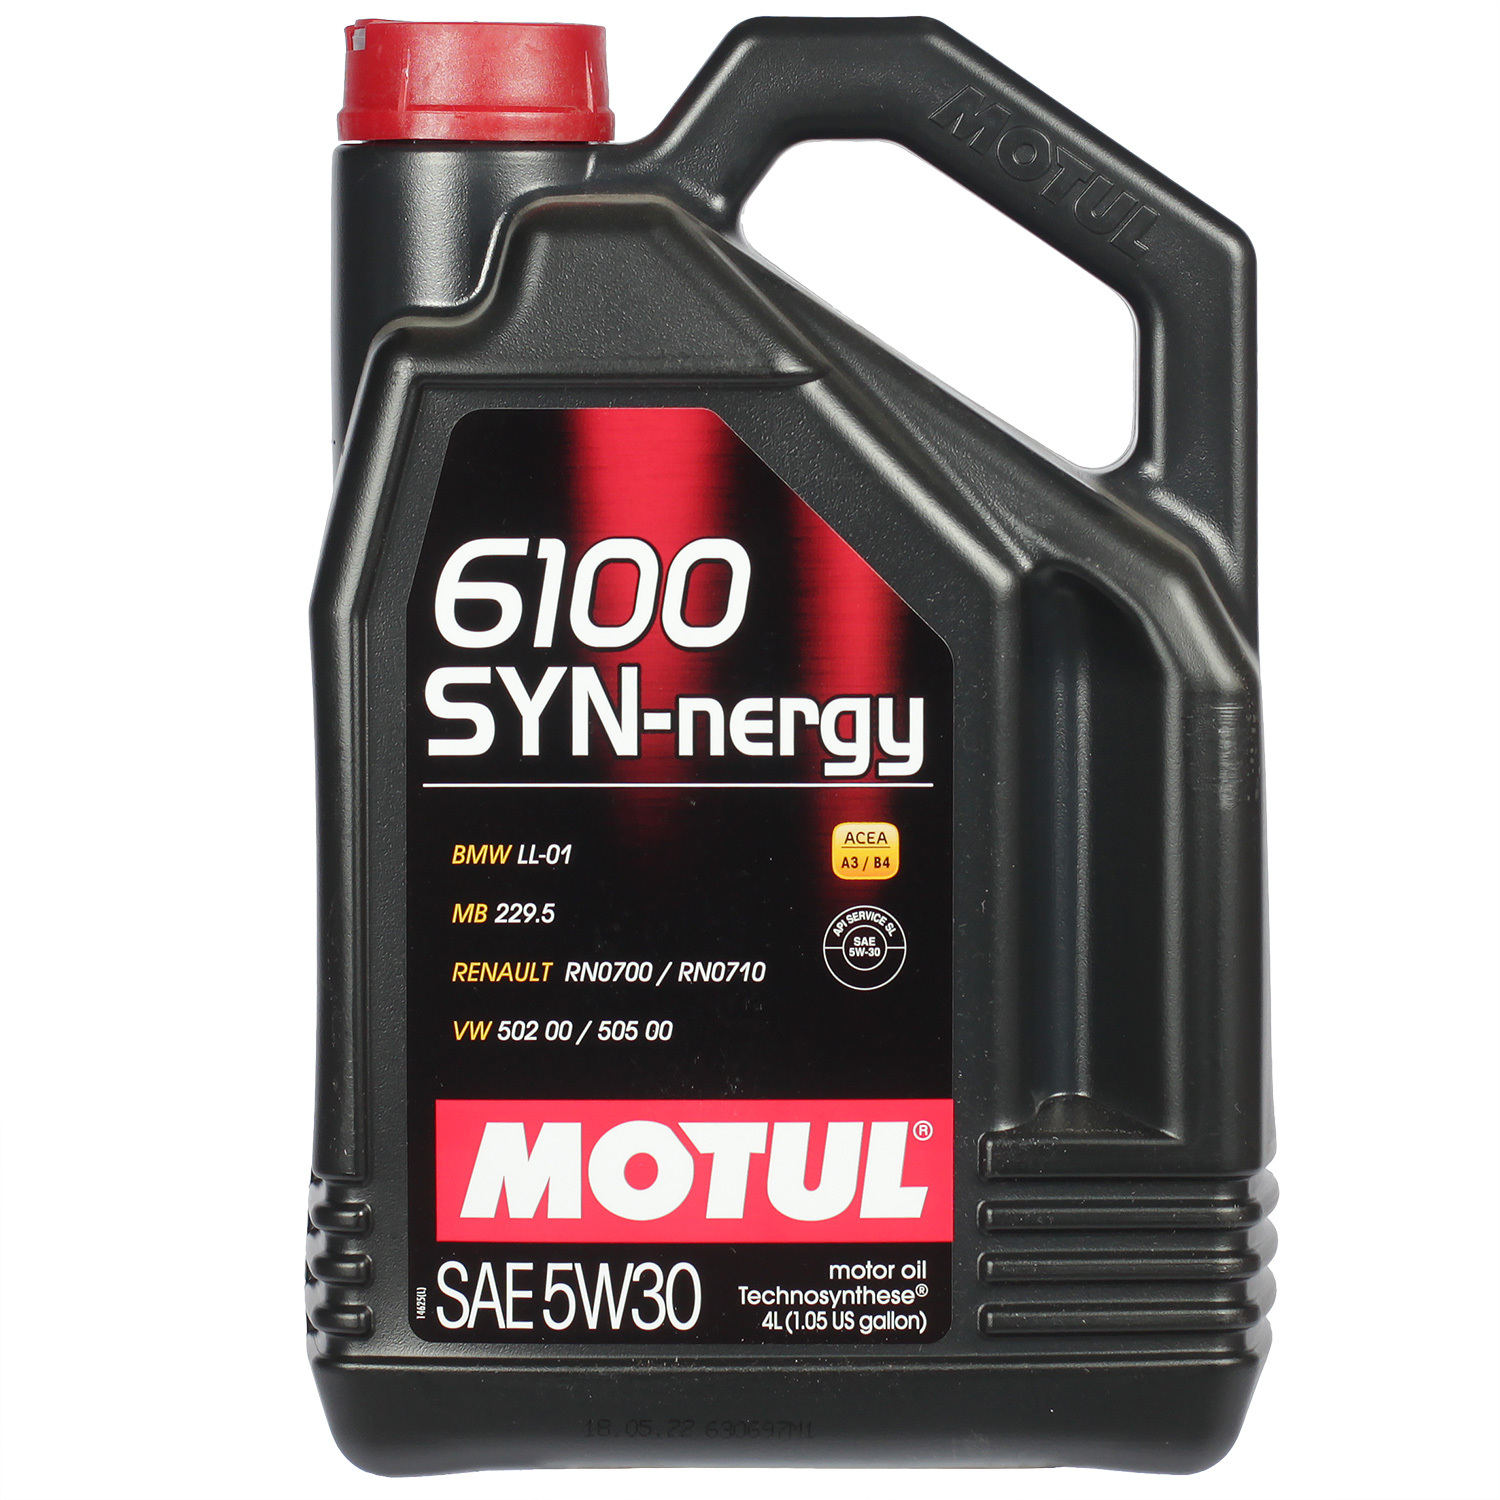 Motul Моторное масло Motul 6100 SYN-NERGY 5W-30, 4 л motul моторное масло motul 6100 synergie 5w 30 4 л